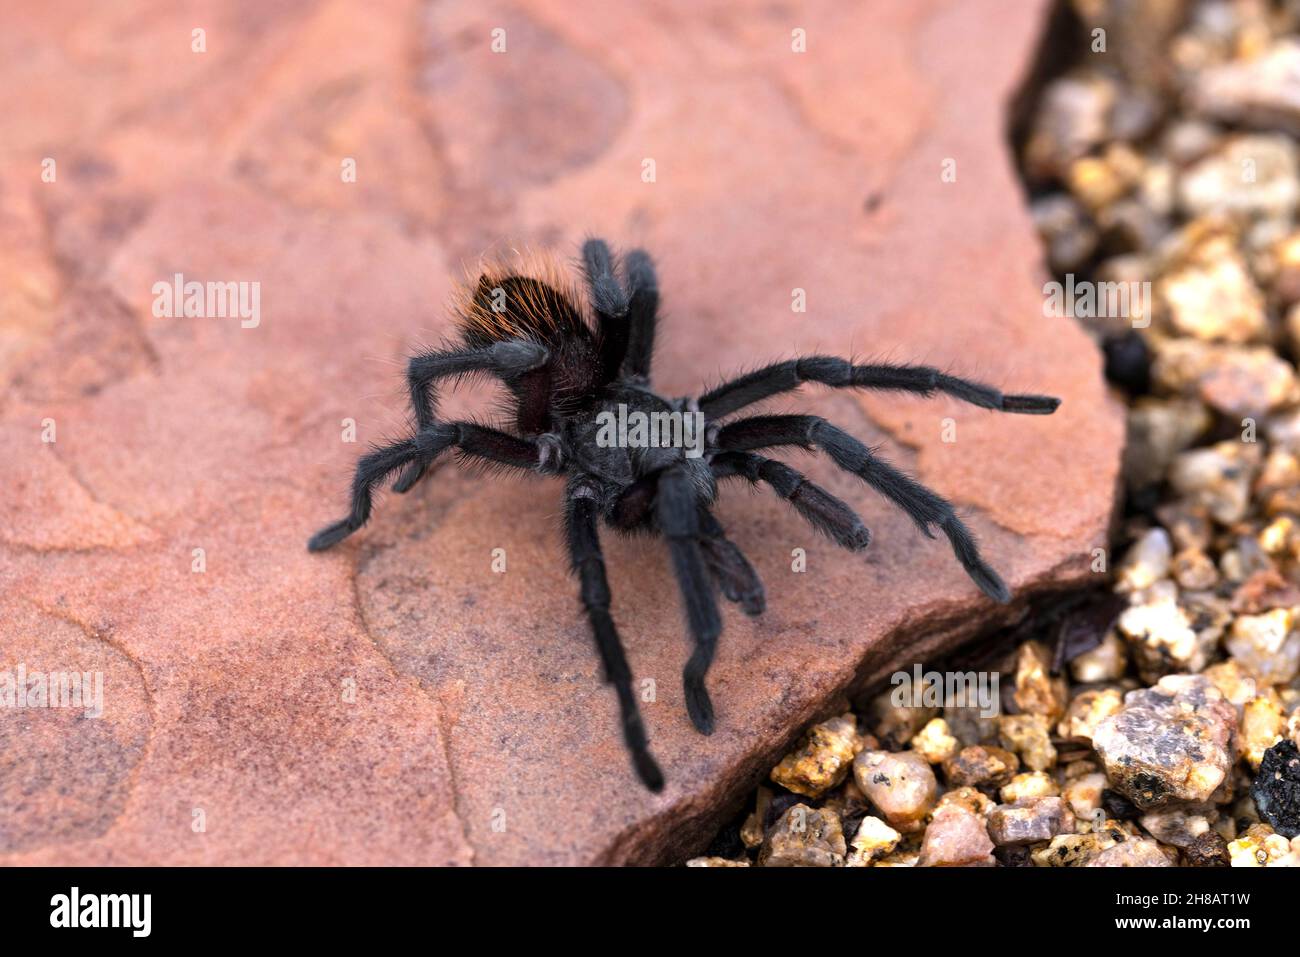 Phoenix, Arizona, Grand Canyon araignée Aphonopelma noire marchant sur une dalle rose. Banque D'Images